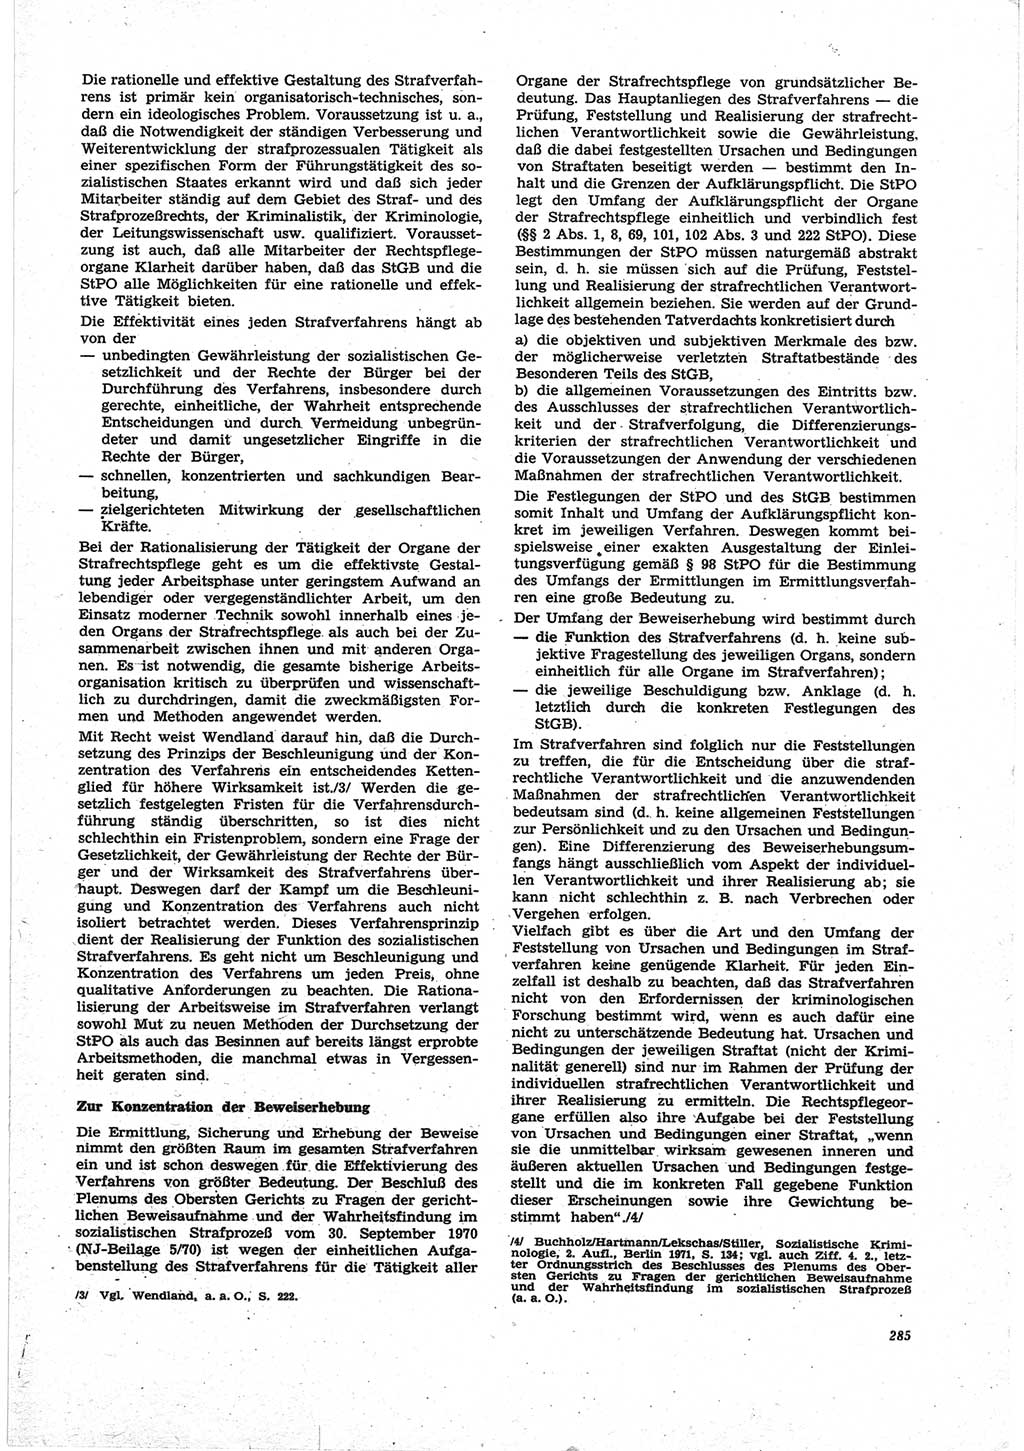 Neue Justiz (NJ), Zeitschrift für Recht und Rechtswissenschaft [Deutsche Demokratische Republik (DDR)], 25. Jahrgang 1971, Seite 285 (NJ DDR 1971, S. 285)